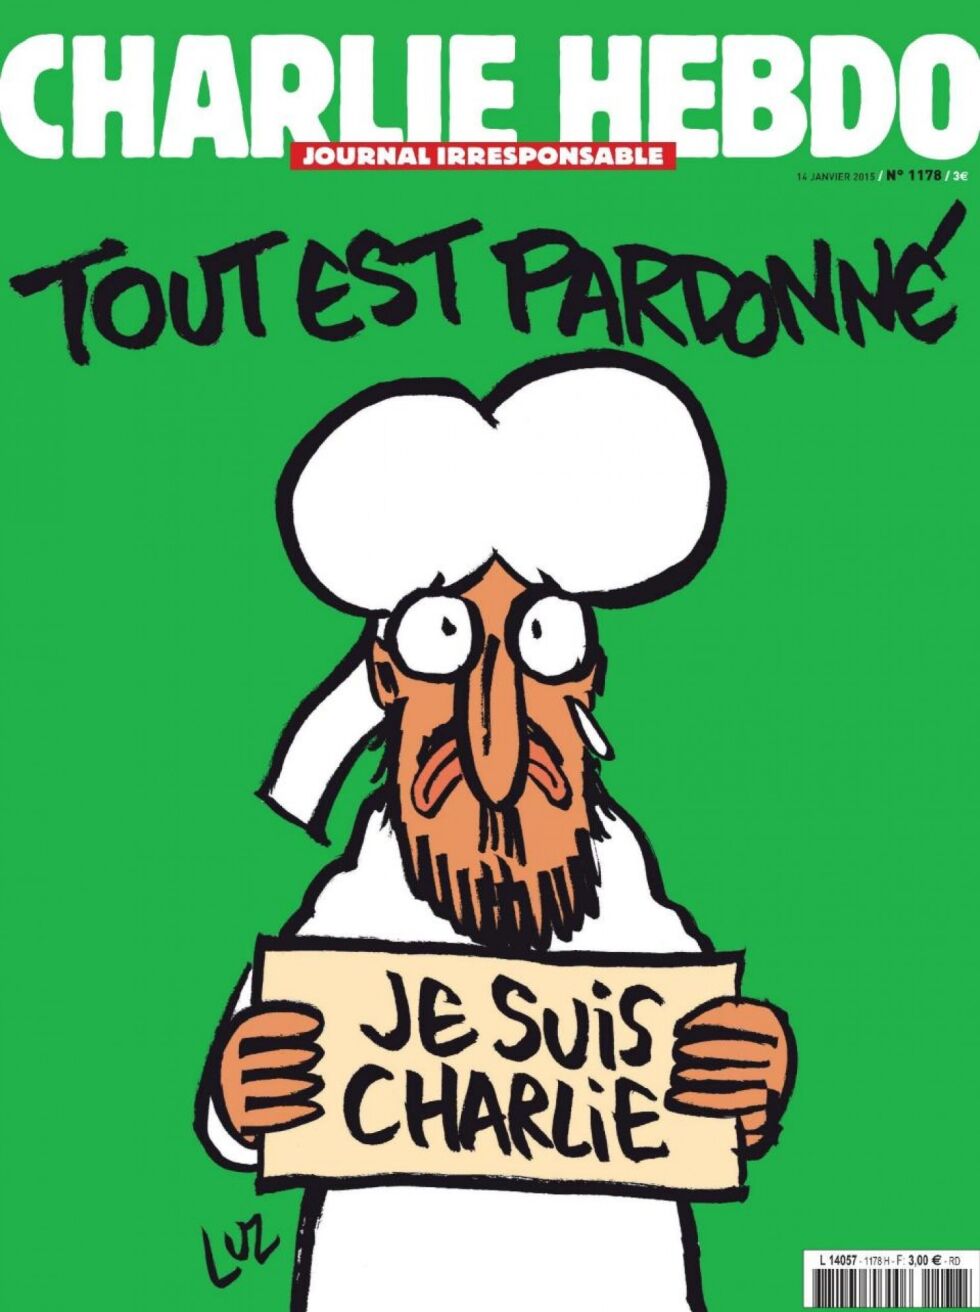 Den første utgaven av satiremagasinet Charlie Hebdo etter terrorangrepet viste en tegning av profeten Muhammed(?) som holder en plakat med «Je suis Charlie» og overskriften «Alt er tilgitt».
 Foto: Charlie Hebdo